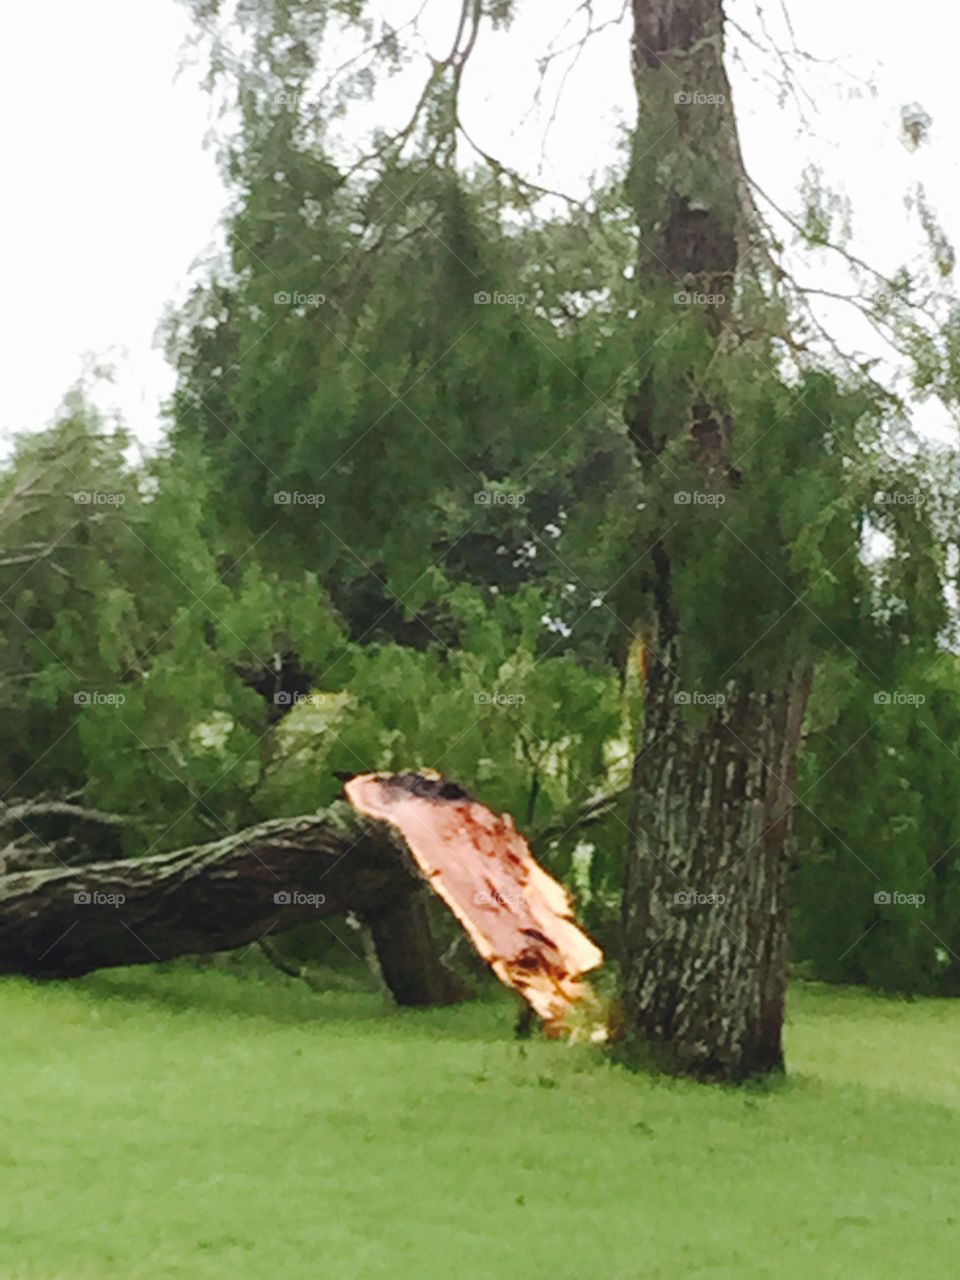 Windstorm. Broken mesquite tree